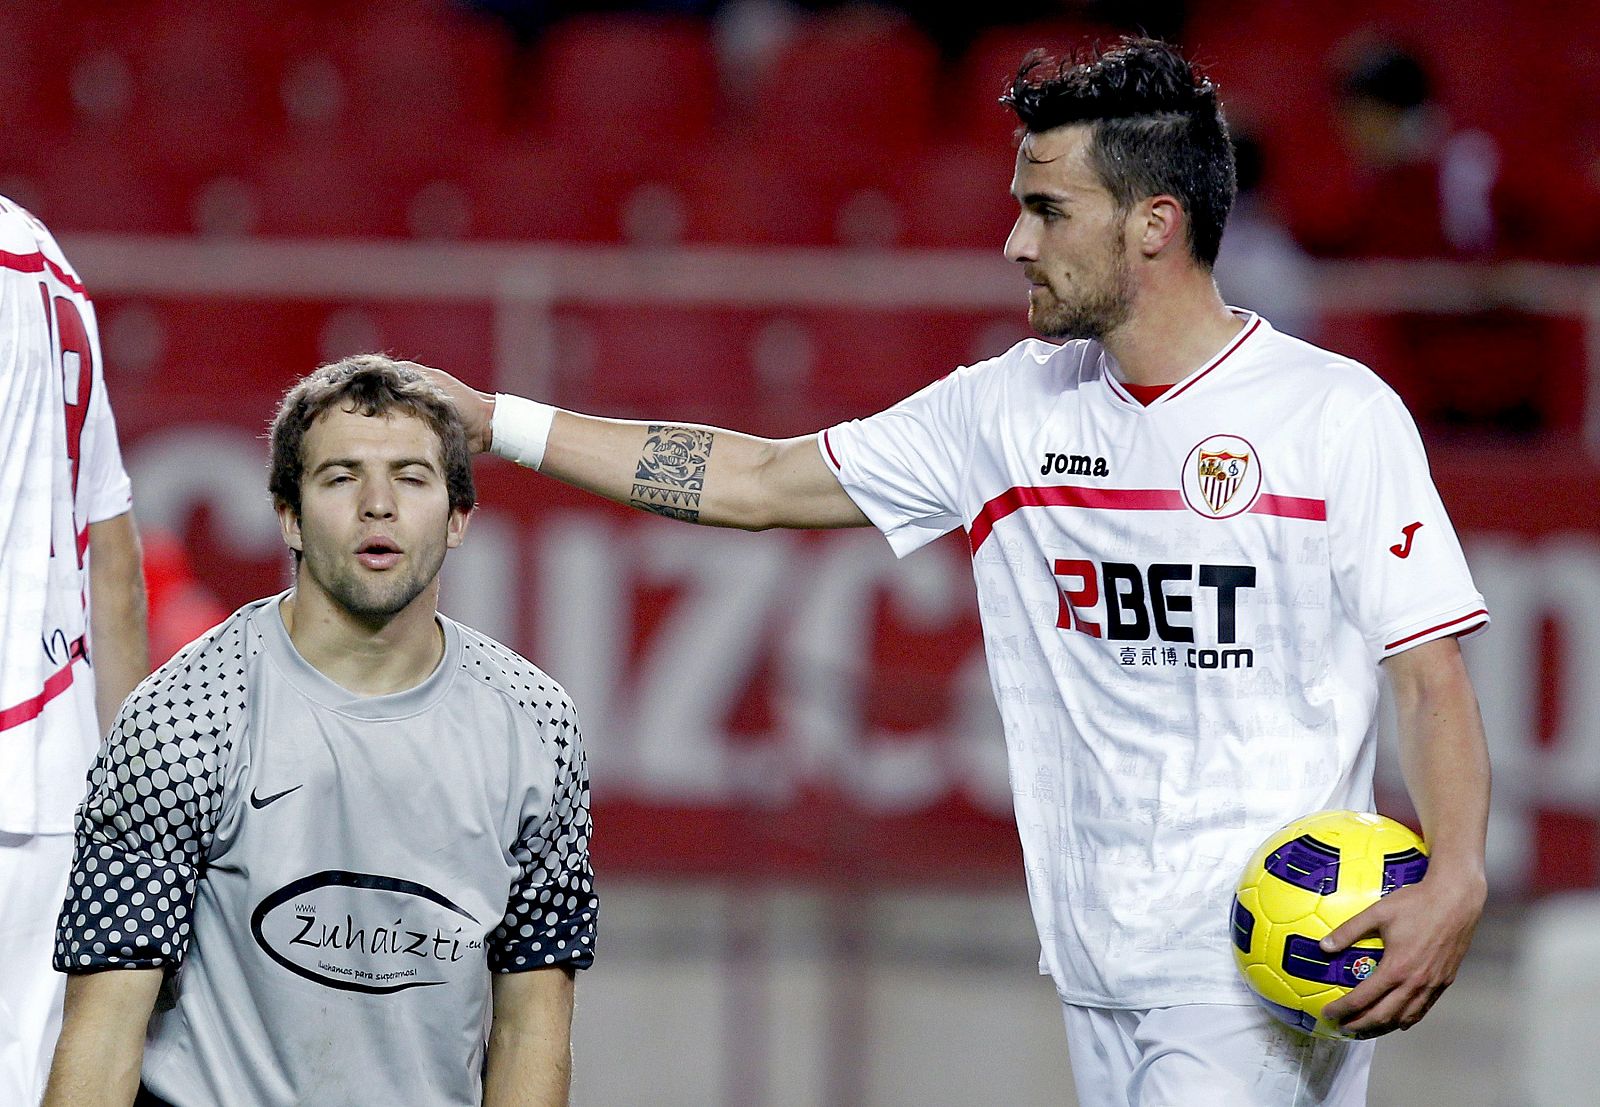 El jugador del Sevilla, Cigarini, consuela al guardameta del Real Unión, San Sebastián, tras marcar el quinto gol del equipo andaluz.